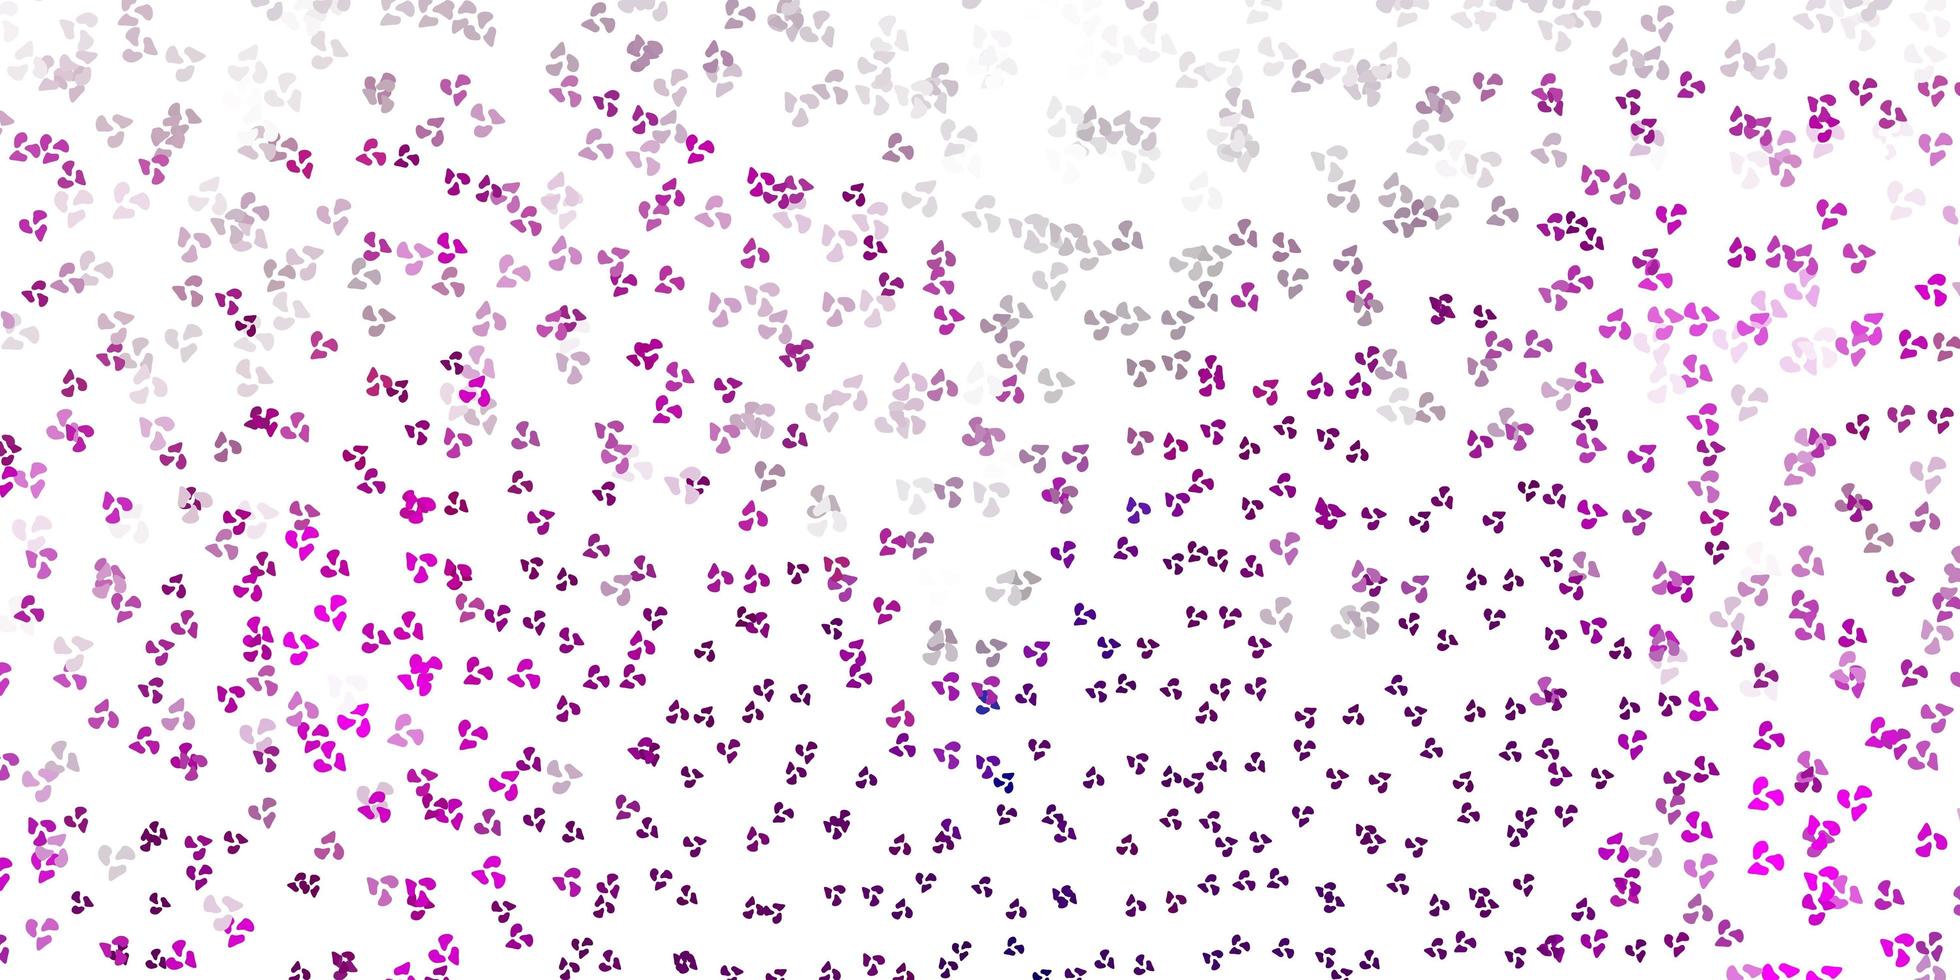 padrão de vetor rosa claro com formas abstratas